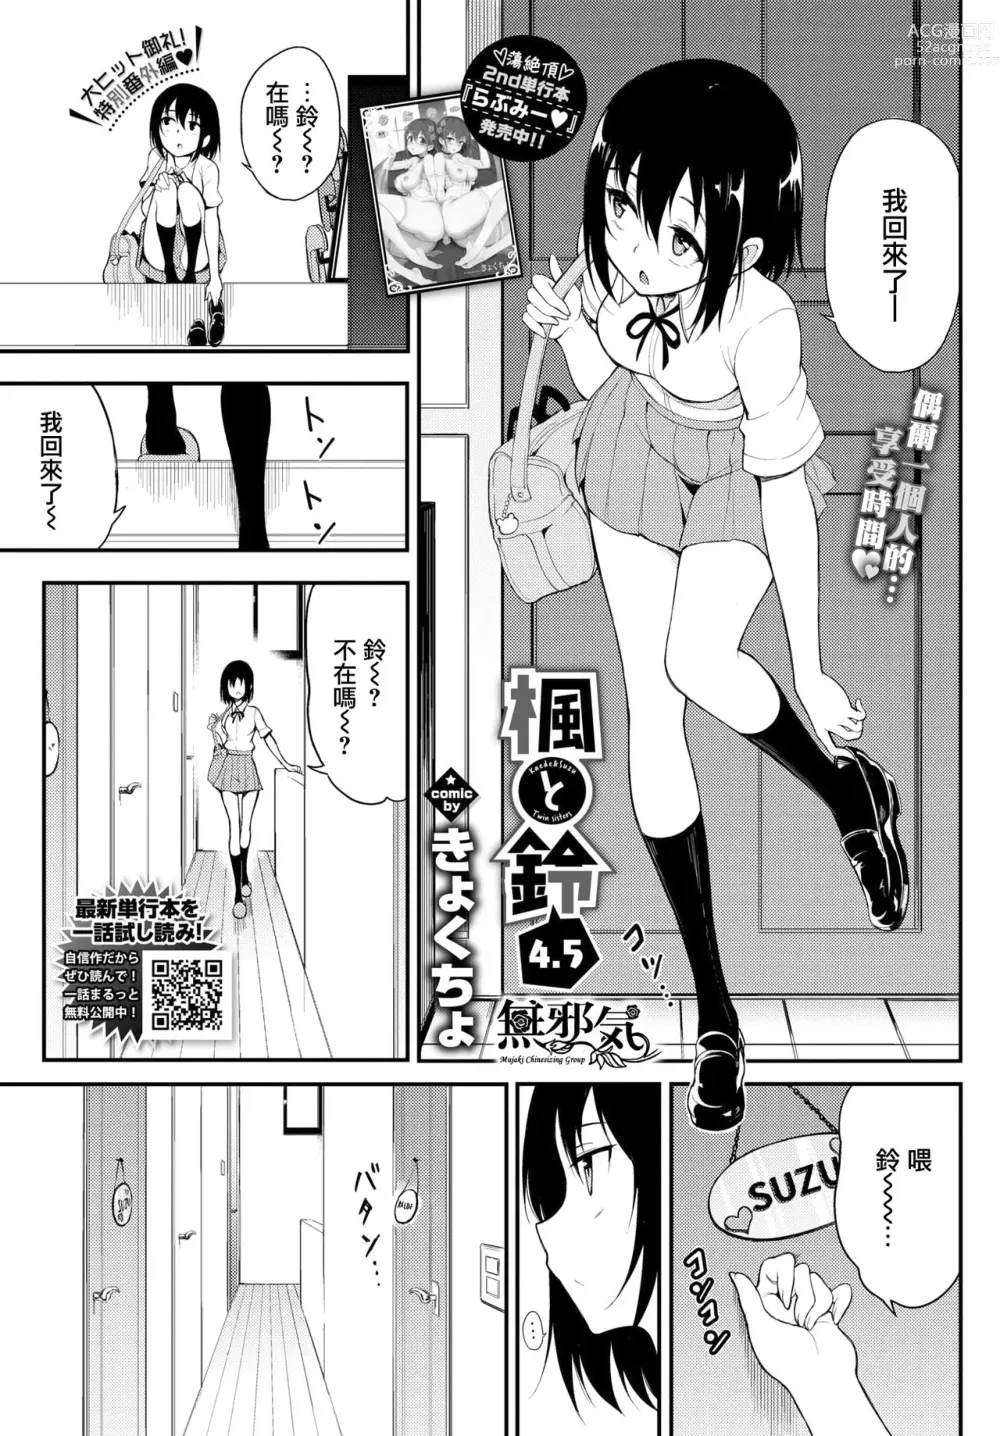 Page 1 of manga Kaede to Suzu 4.5